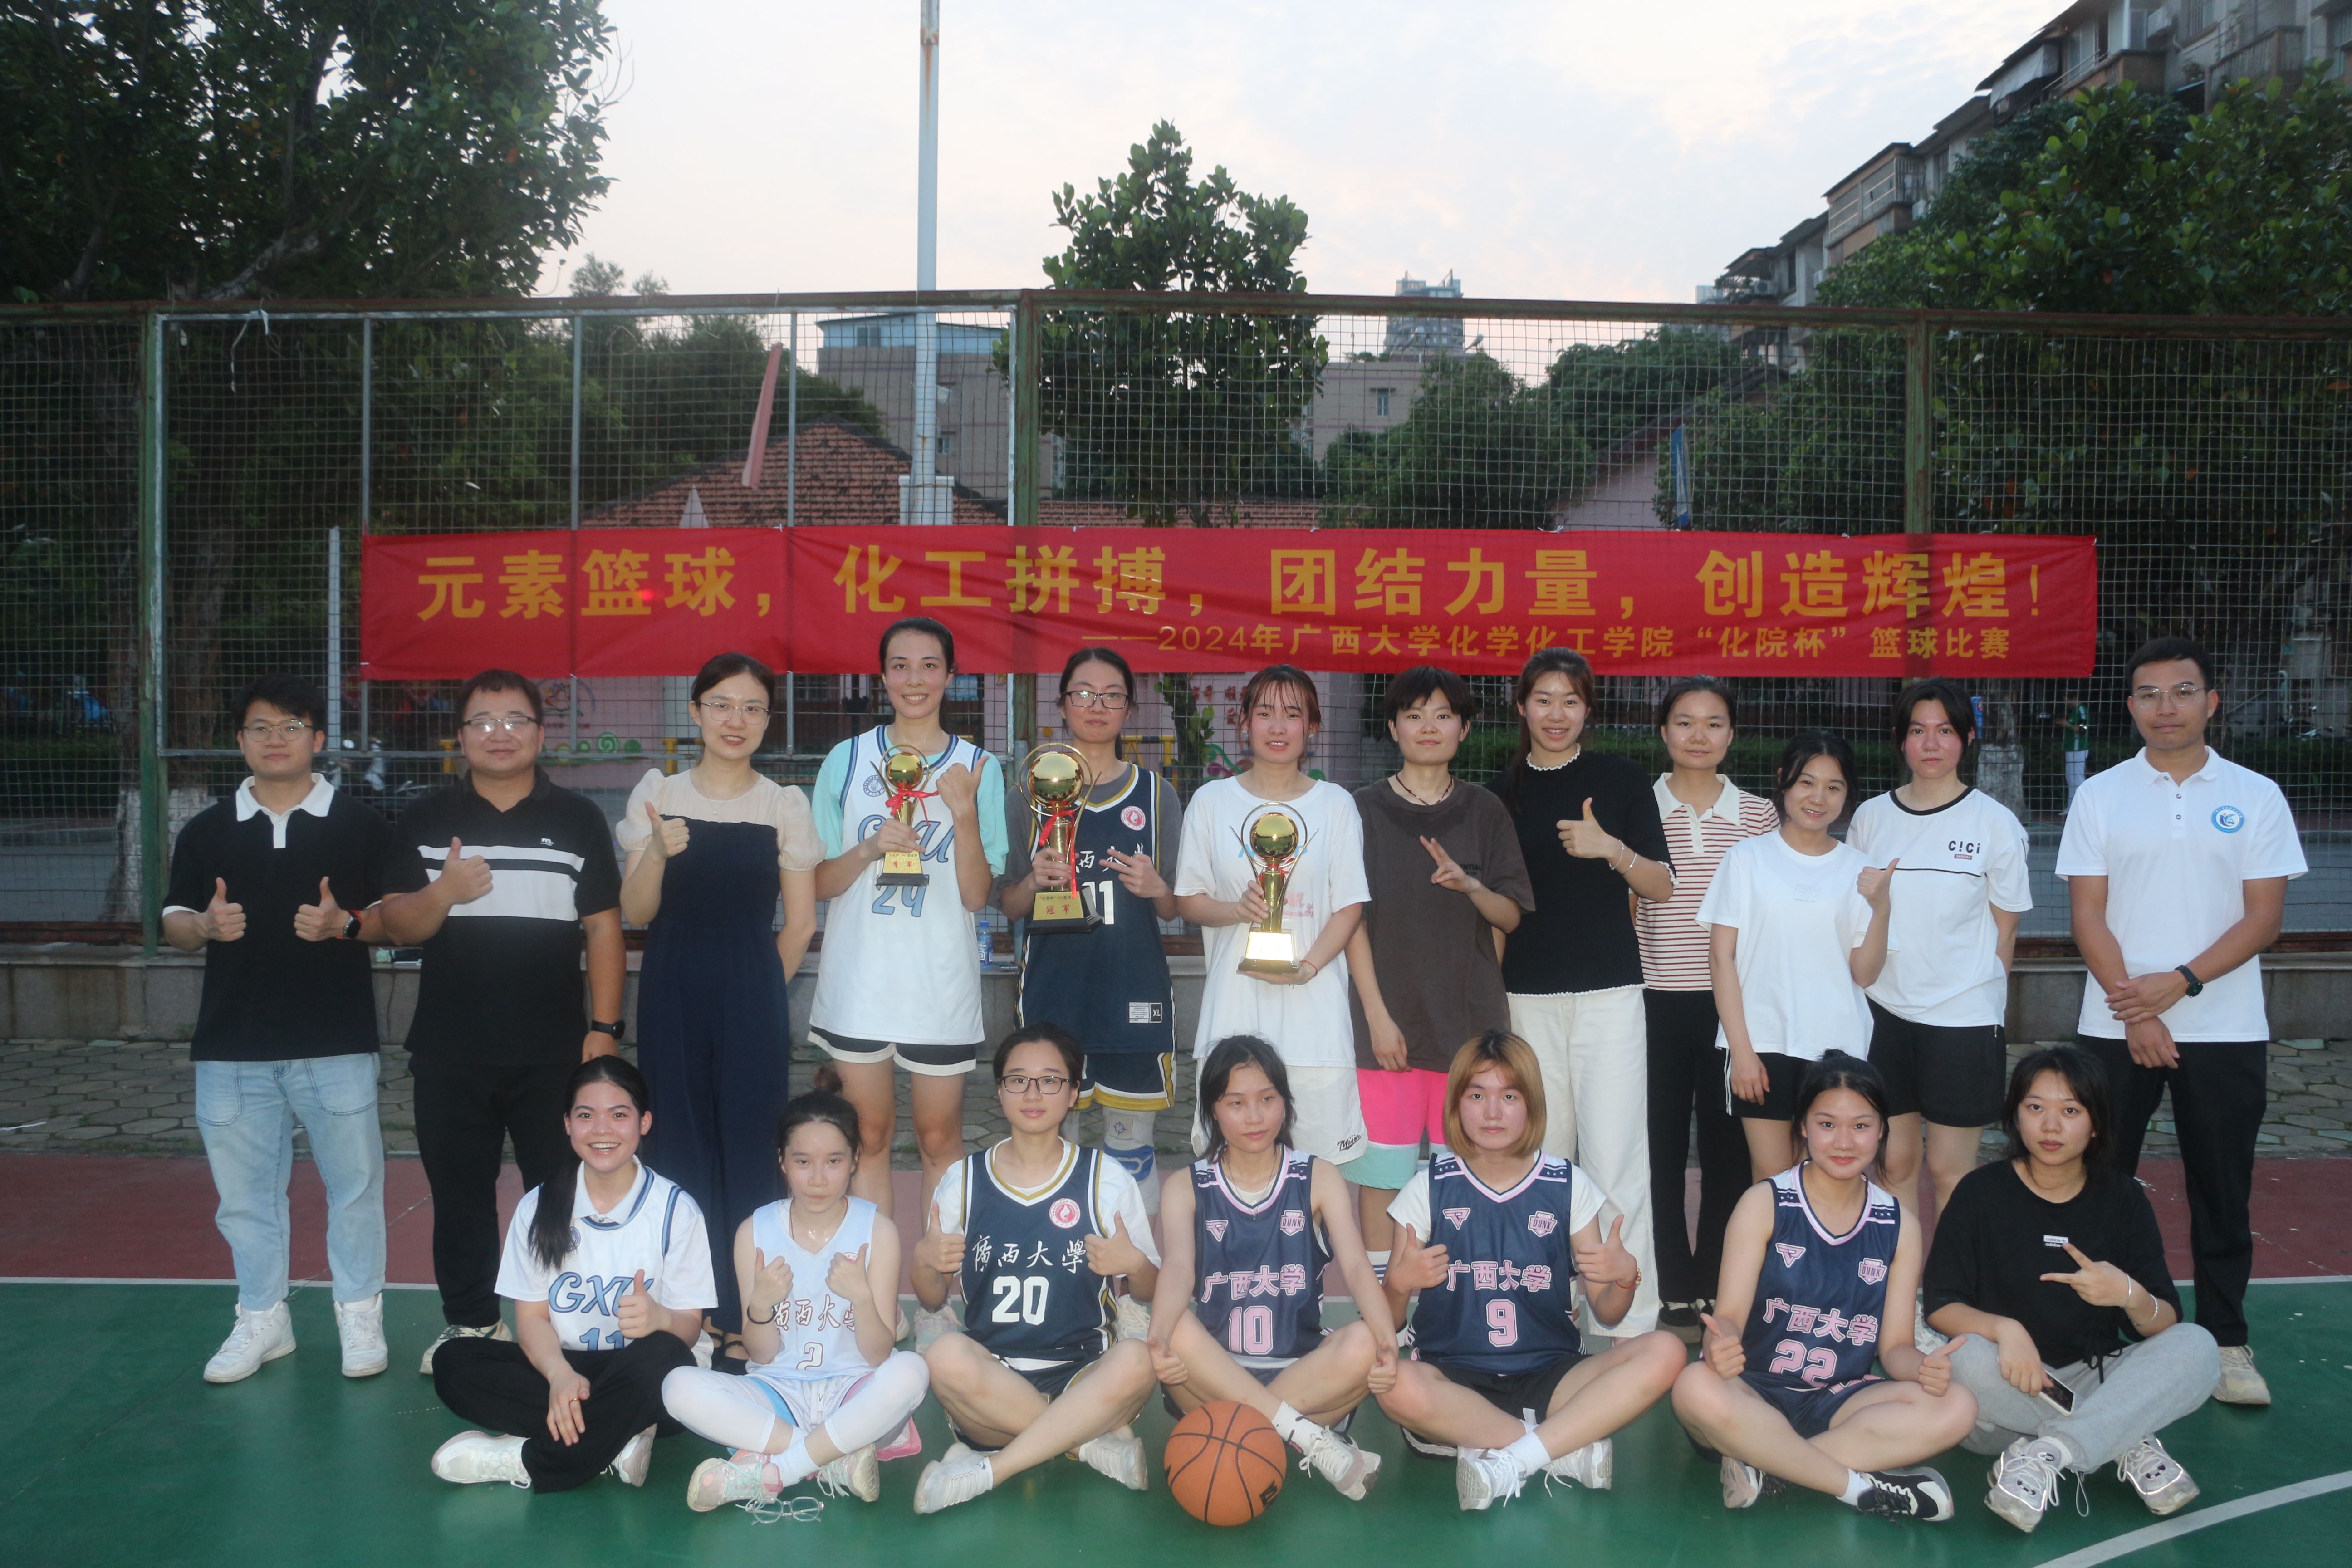 生活 弘扬体育精神——我院化院杯篮球比赛圆满成功